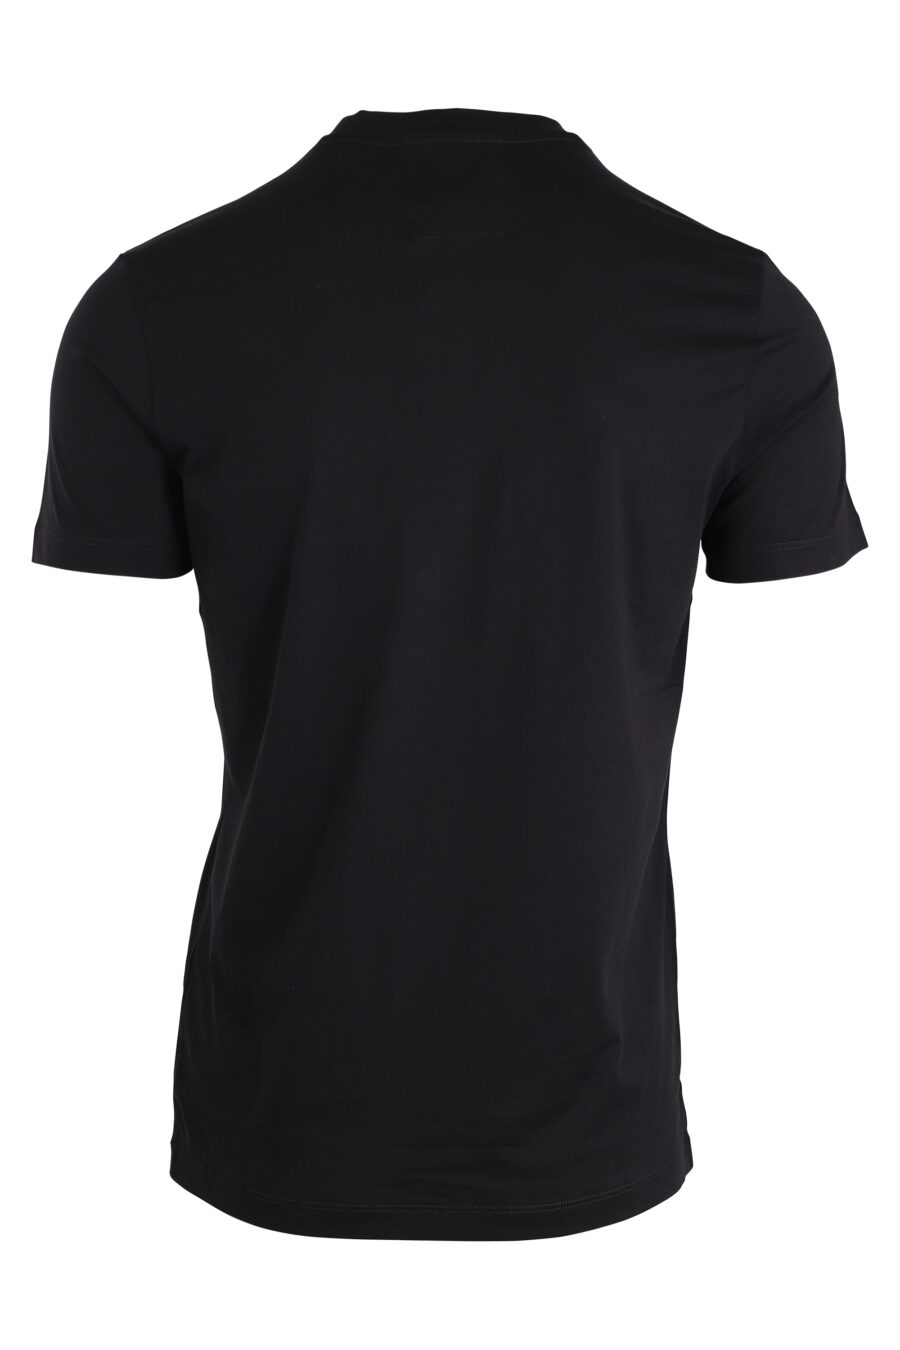 T-shirt preta com letras brancas maxilogo - IMG 4251